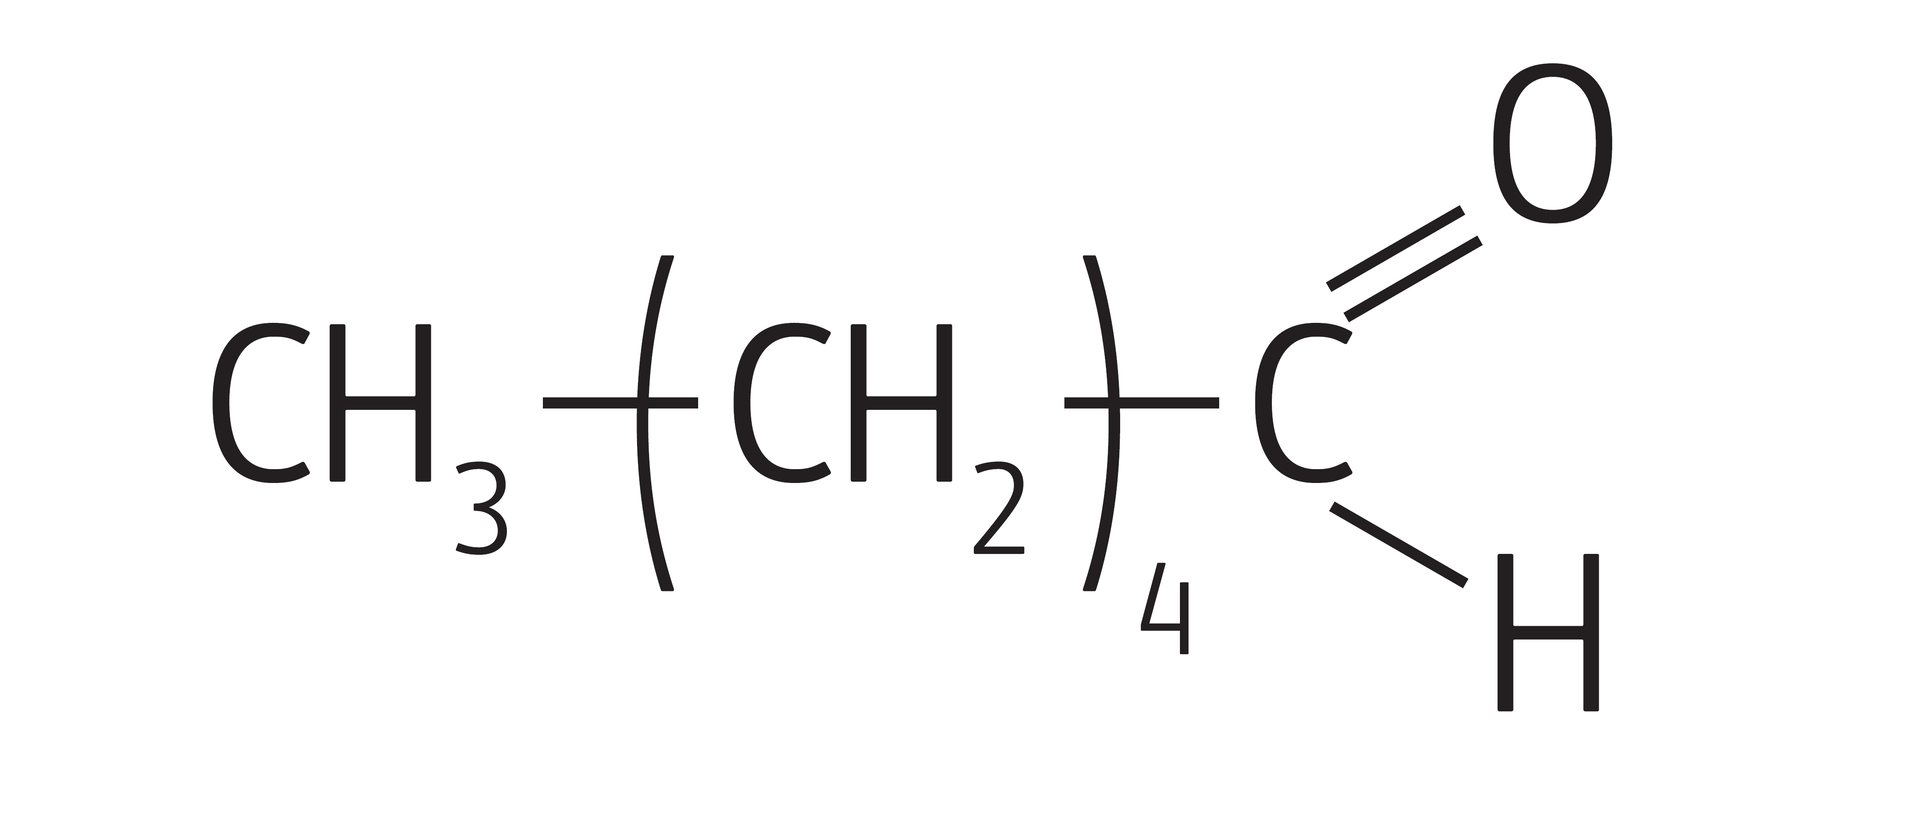 Na ilustracji jest wzór półstrukturalny: opis od lewej strony - grupa metylowa łączy się wiązaniem pojedynczym z grupą metylenową cztery razy wziętą, a ta łączy się wiązaniem pojedynczym z atomem węgla. Atom węgla łączy się wiązaniem podwójnym z atomem tlenu i wiązaniem pojedynczym z atomem wodoru. 